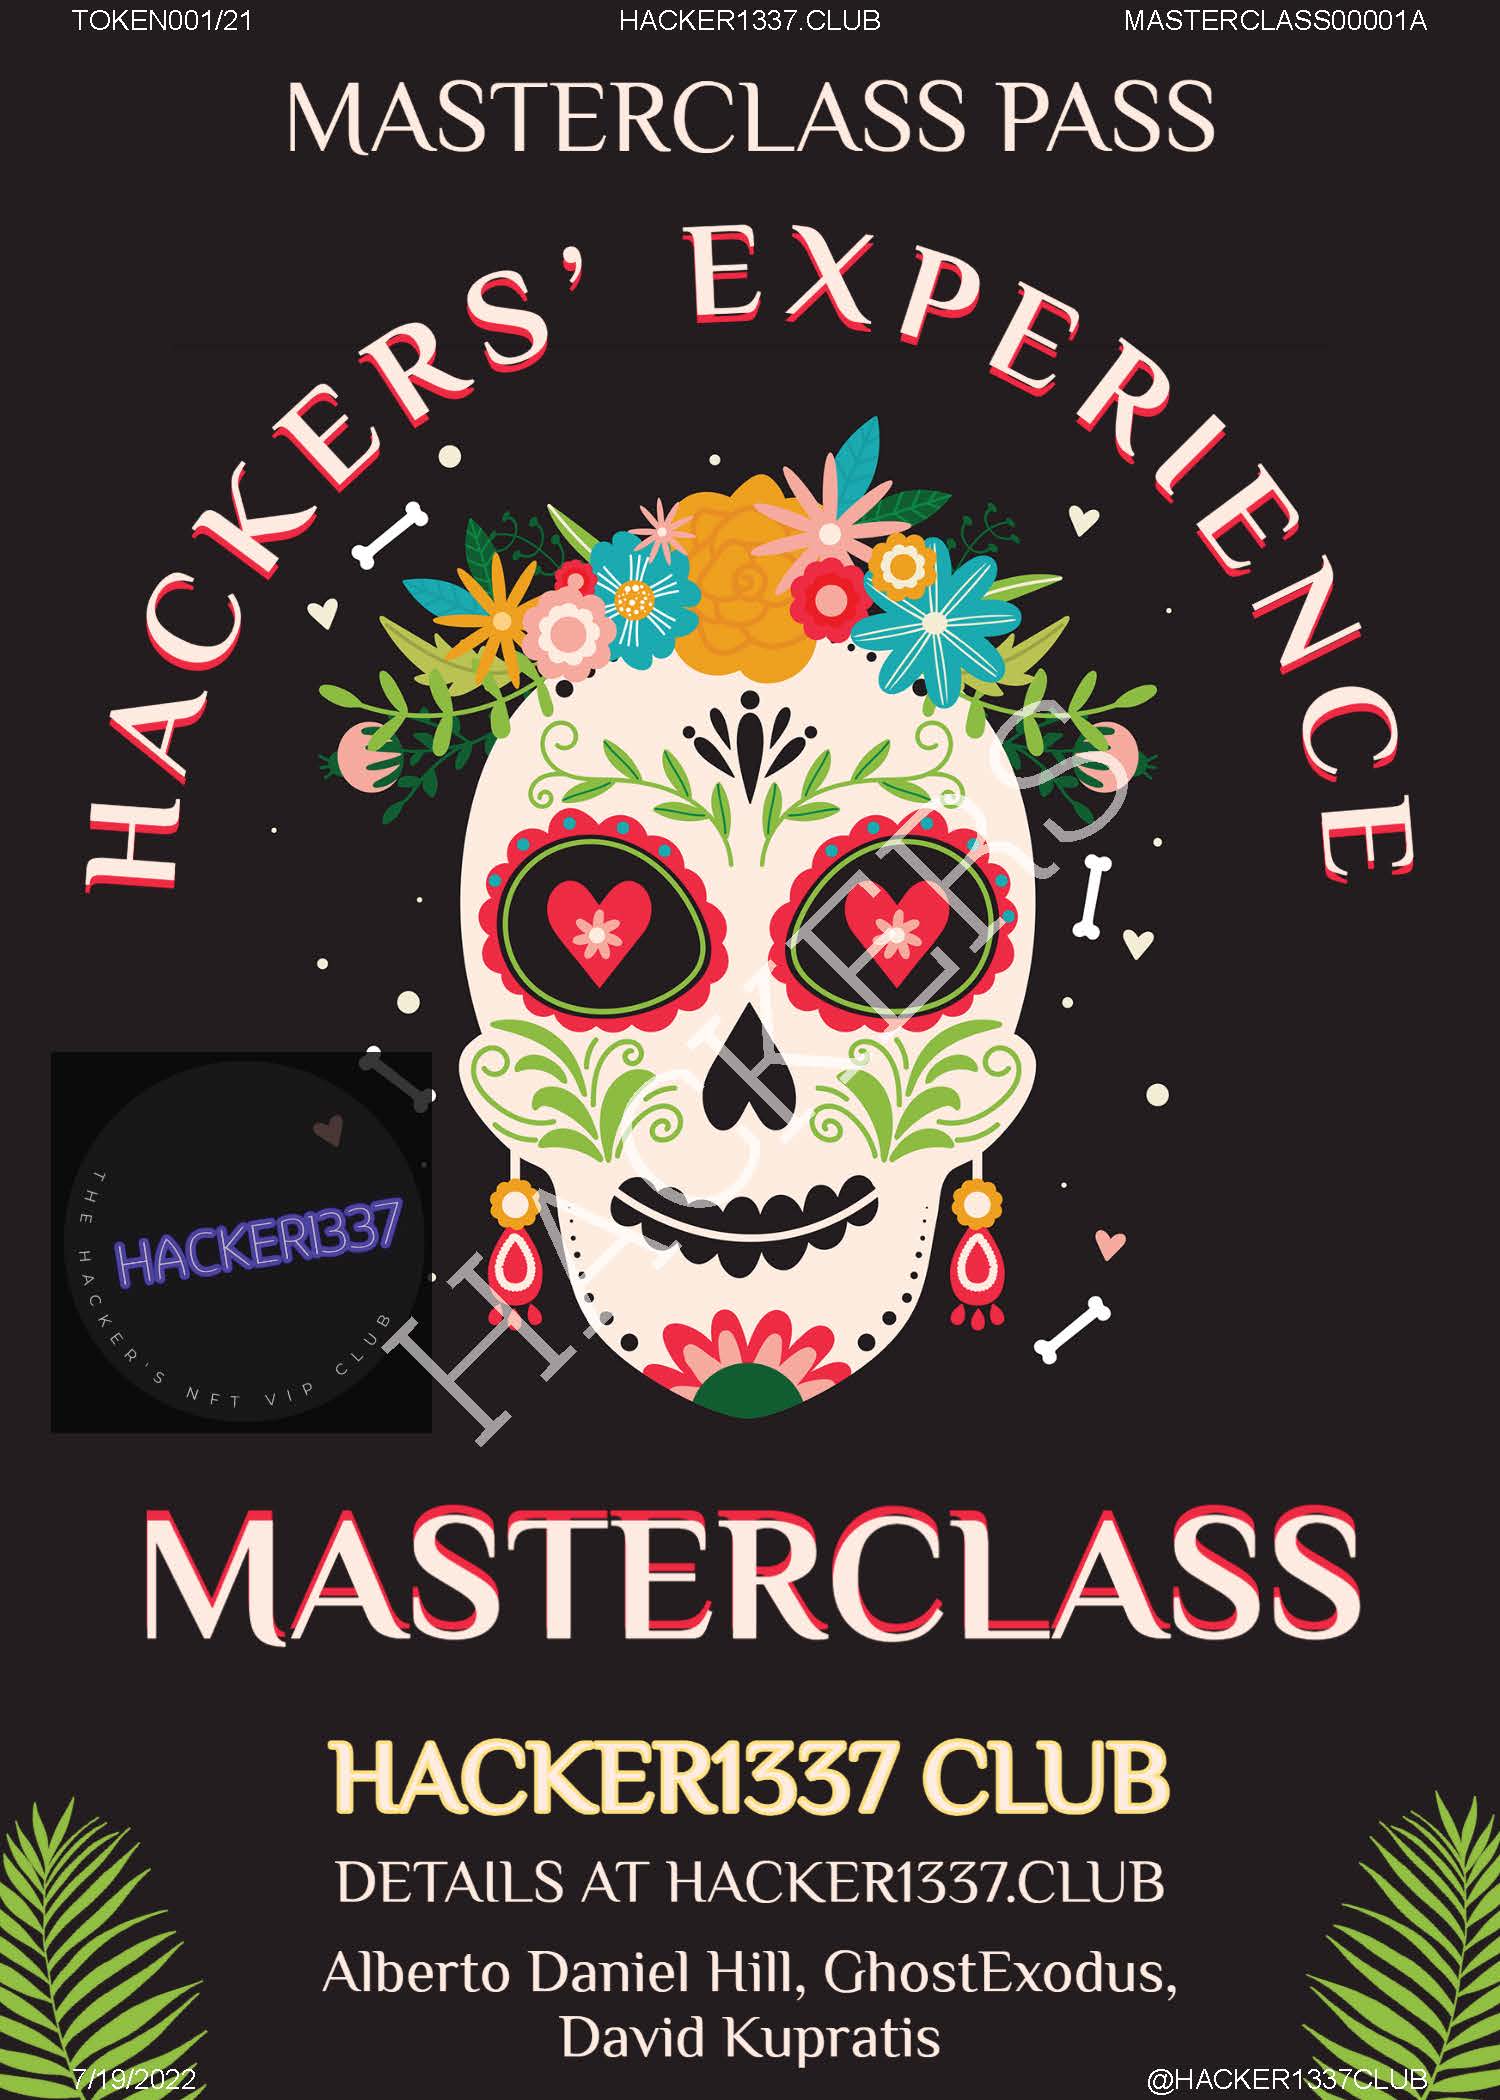 MASTERCLASS: HACKERS EXPERERIENCE